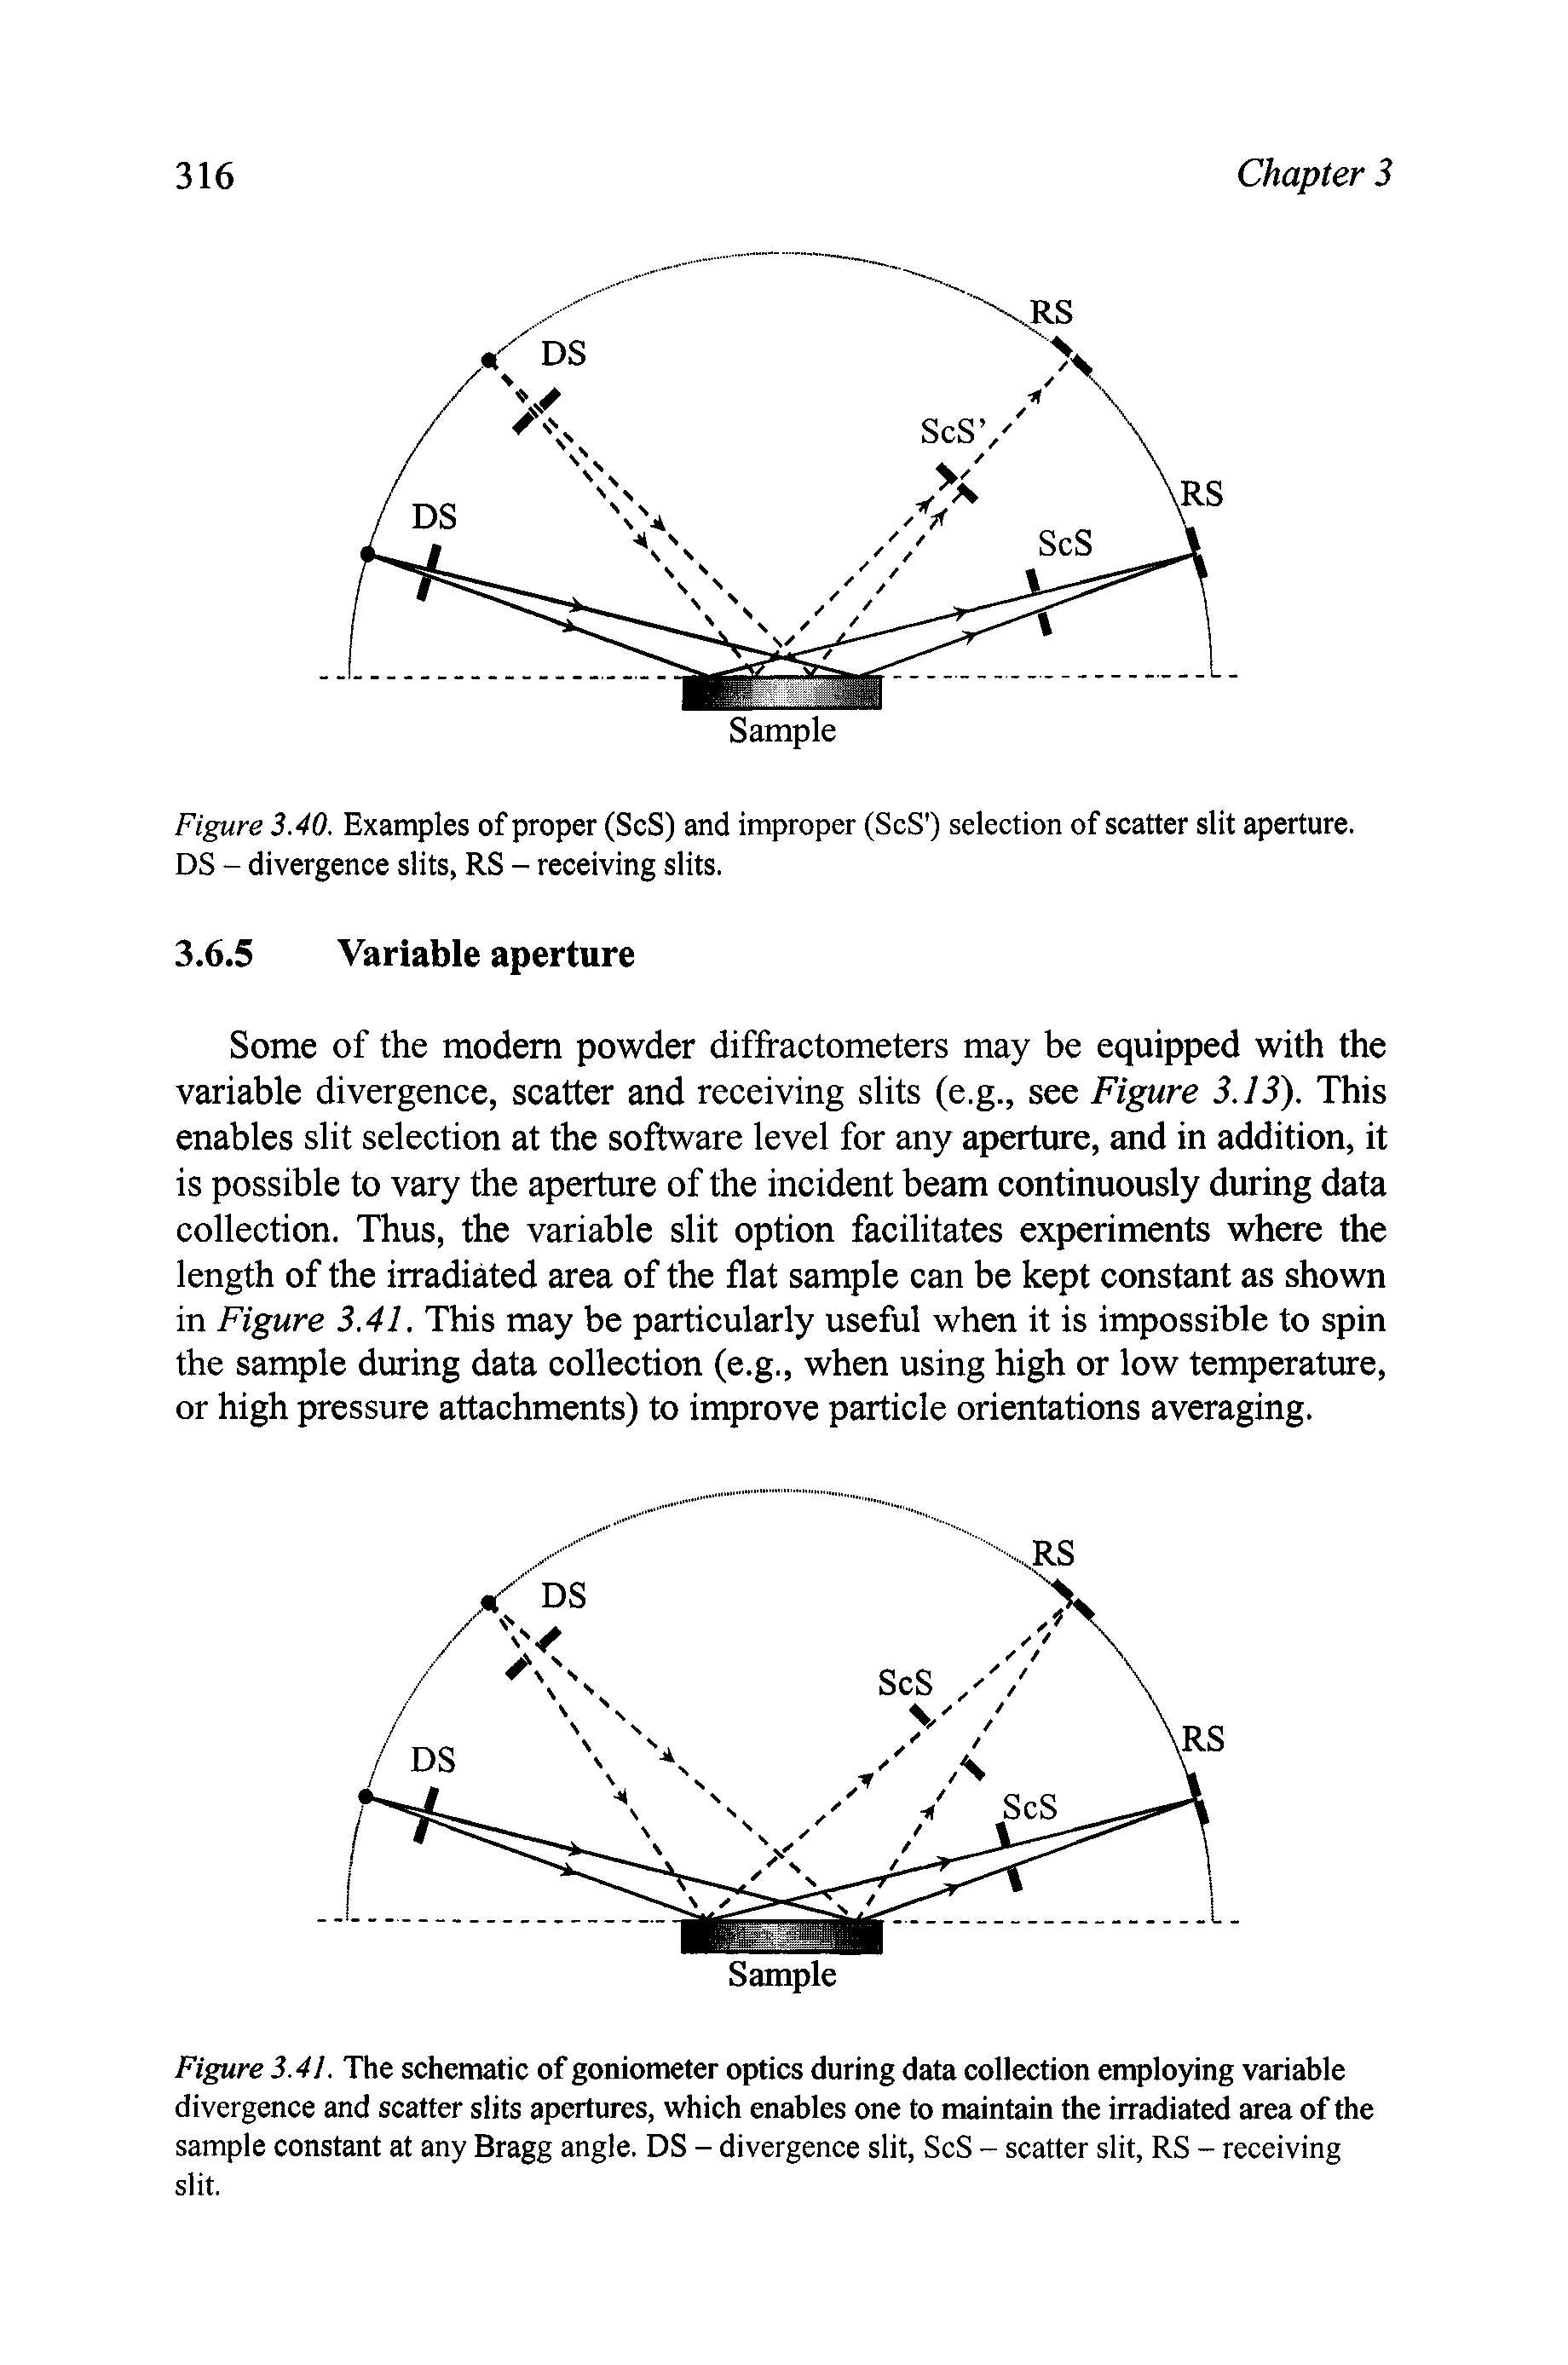 Figure 3.40. Examples of proper (ScS) and improper (ScS ) selection of scatter slit aperture. DS - divergence slits, RS - receiving slits.